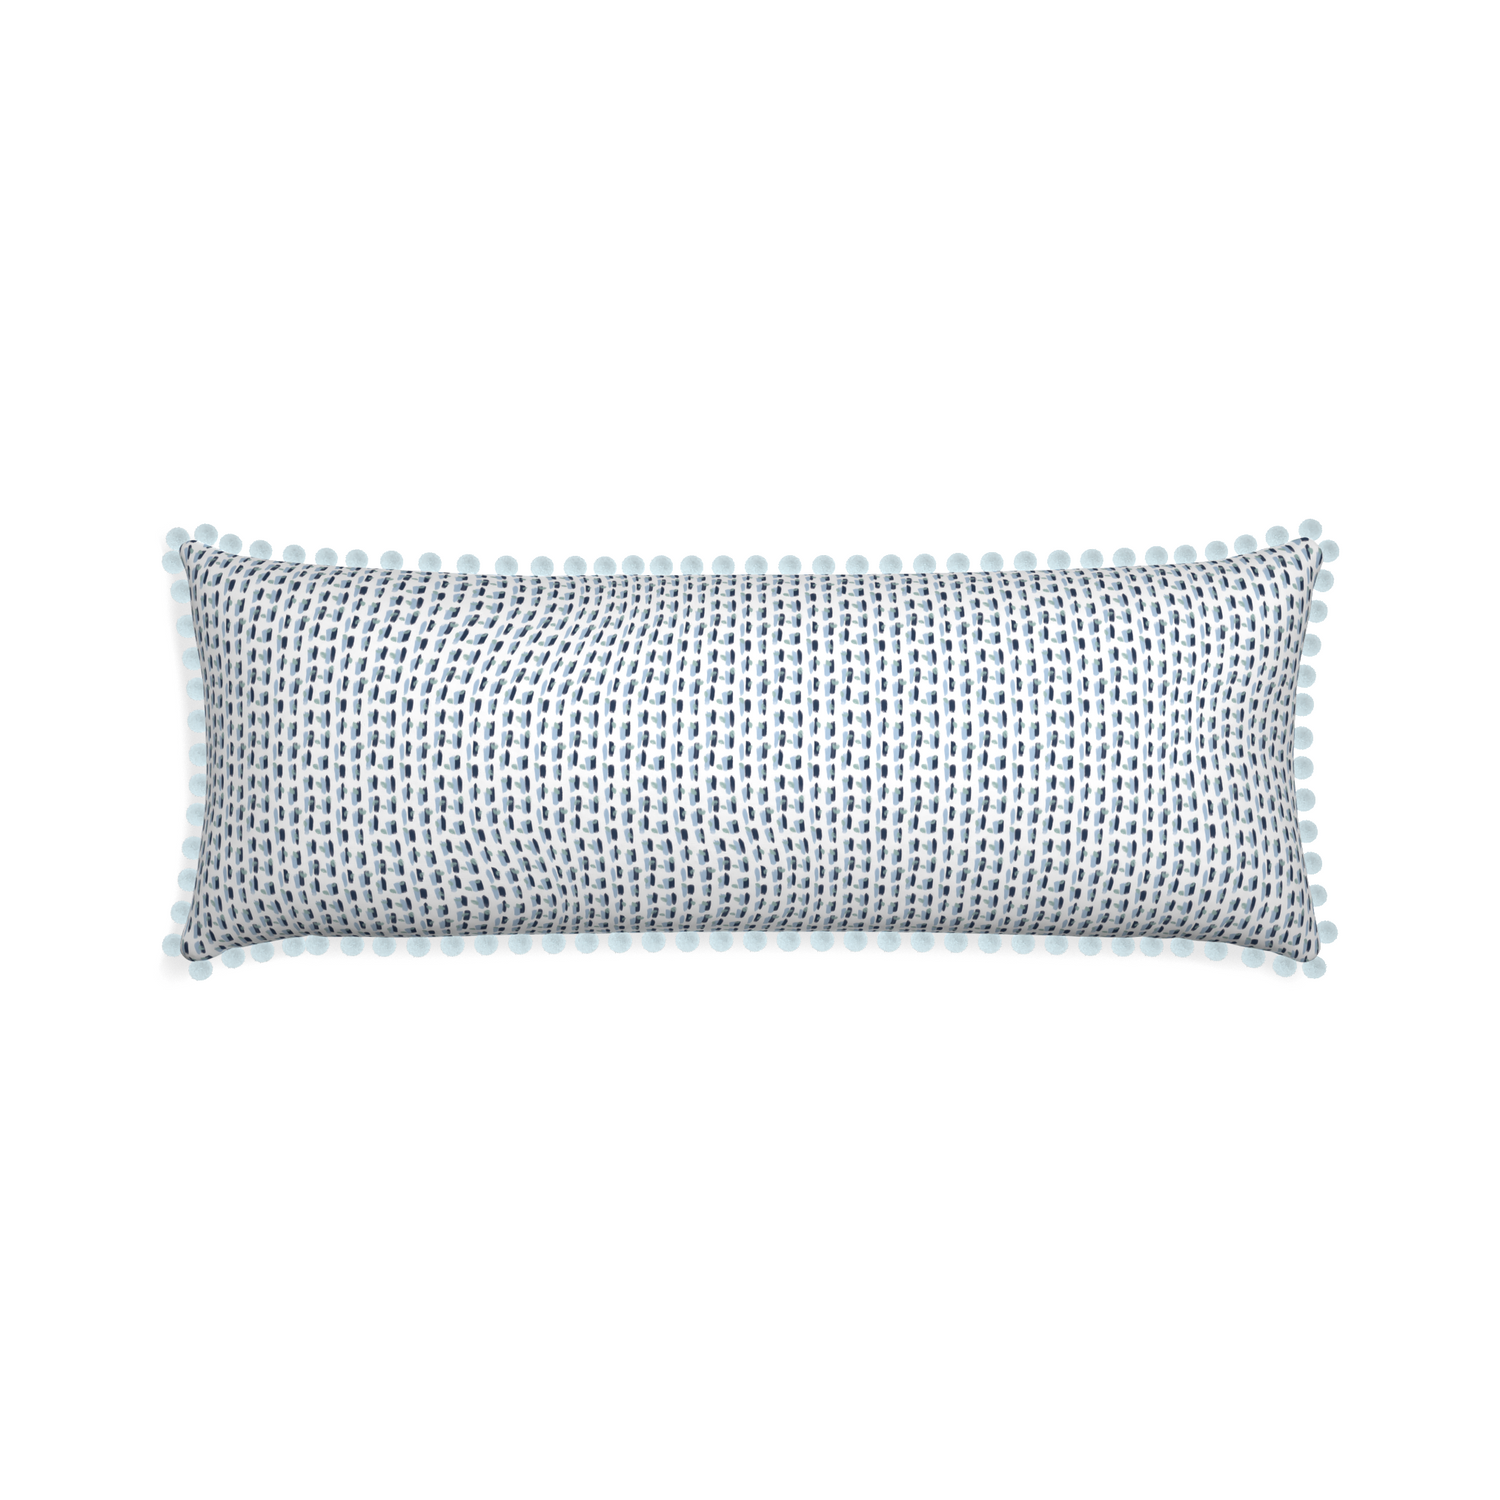 Xl-lumbar poppy blue custom pillow with powder pom pom on white background